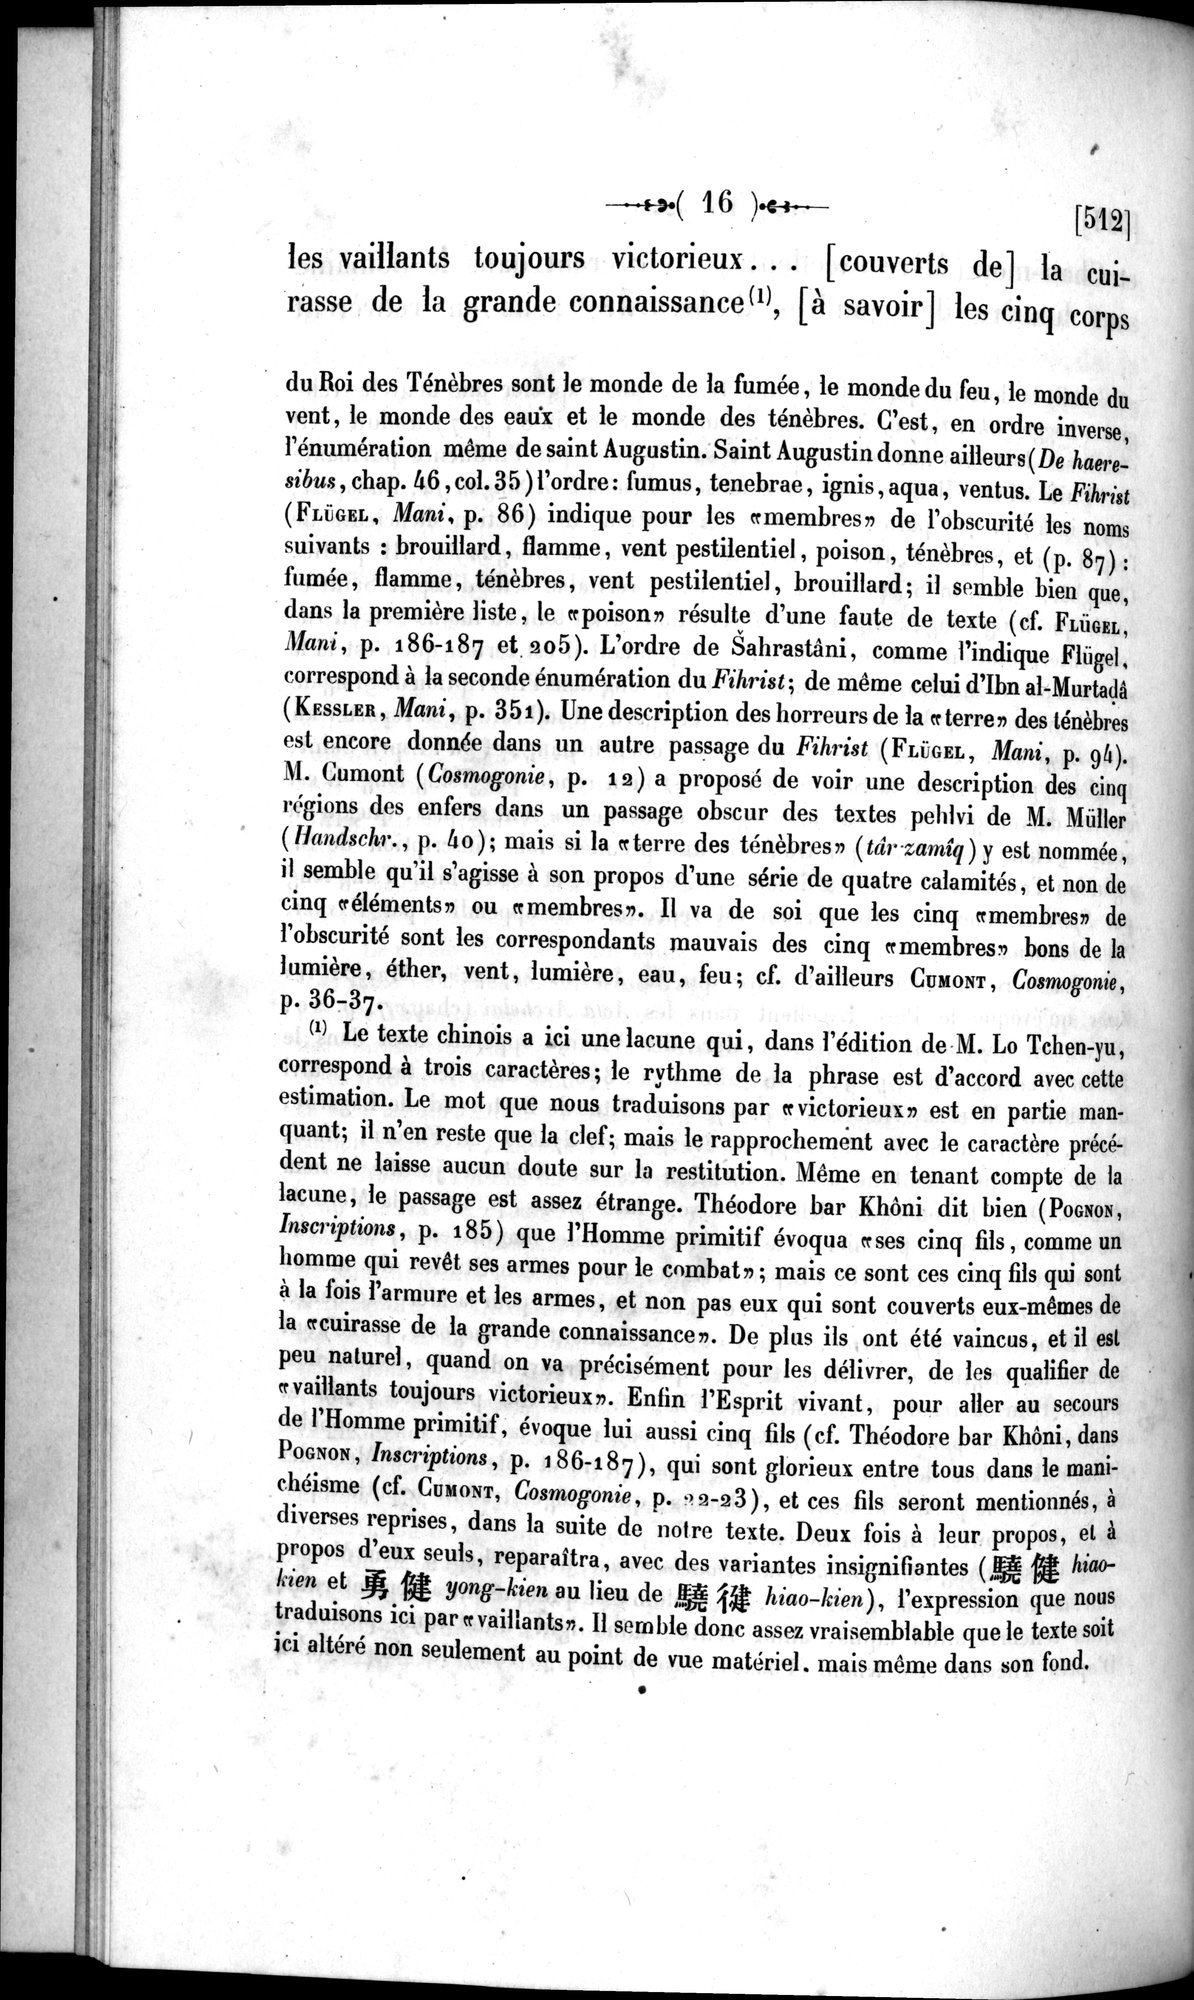 Un traité manichéen retrouvé en Chine : vol.1 / Page 26 (Grayscale High Resolution Image)